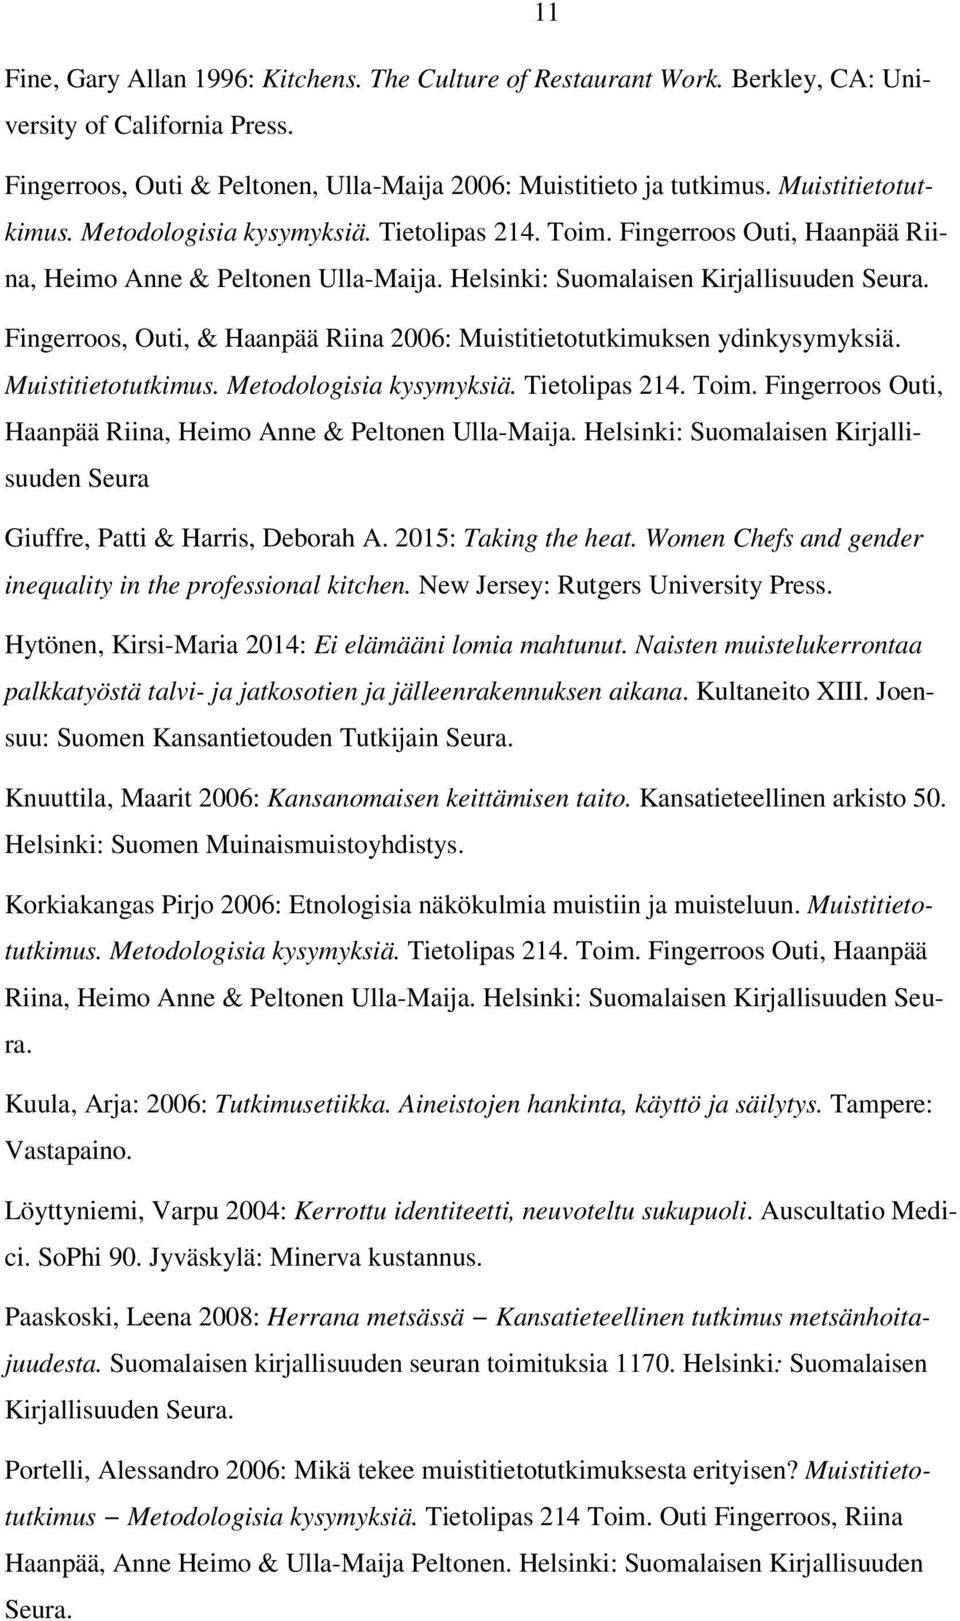 Fingerroos, Outi, & Haanpää Riina 2006: Muistitietotutkimuksen ydinkysymyksiä. Muistitietotutkimus. Metodologisia kysymyksiä. Tietolipas 214. Toim.